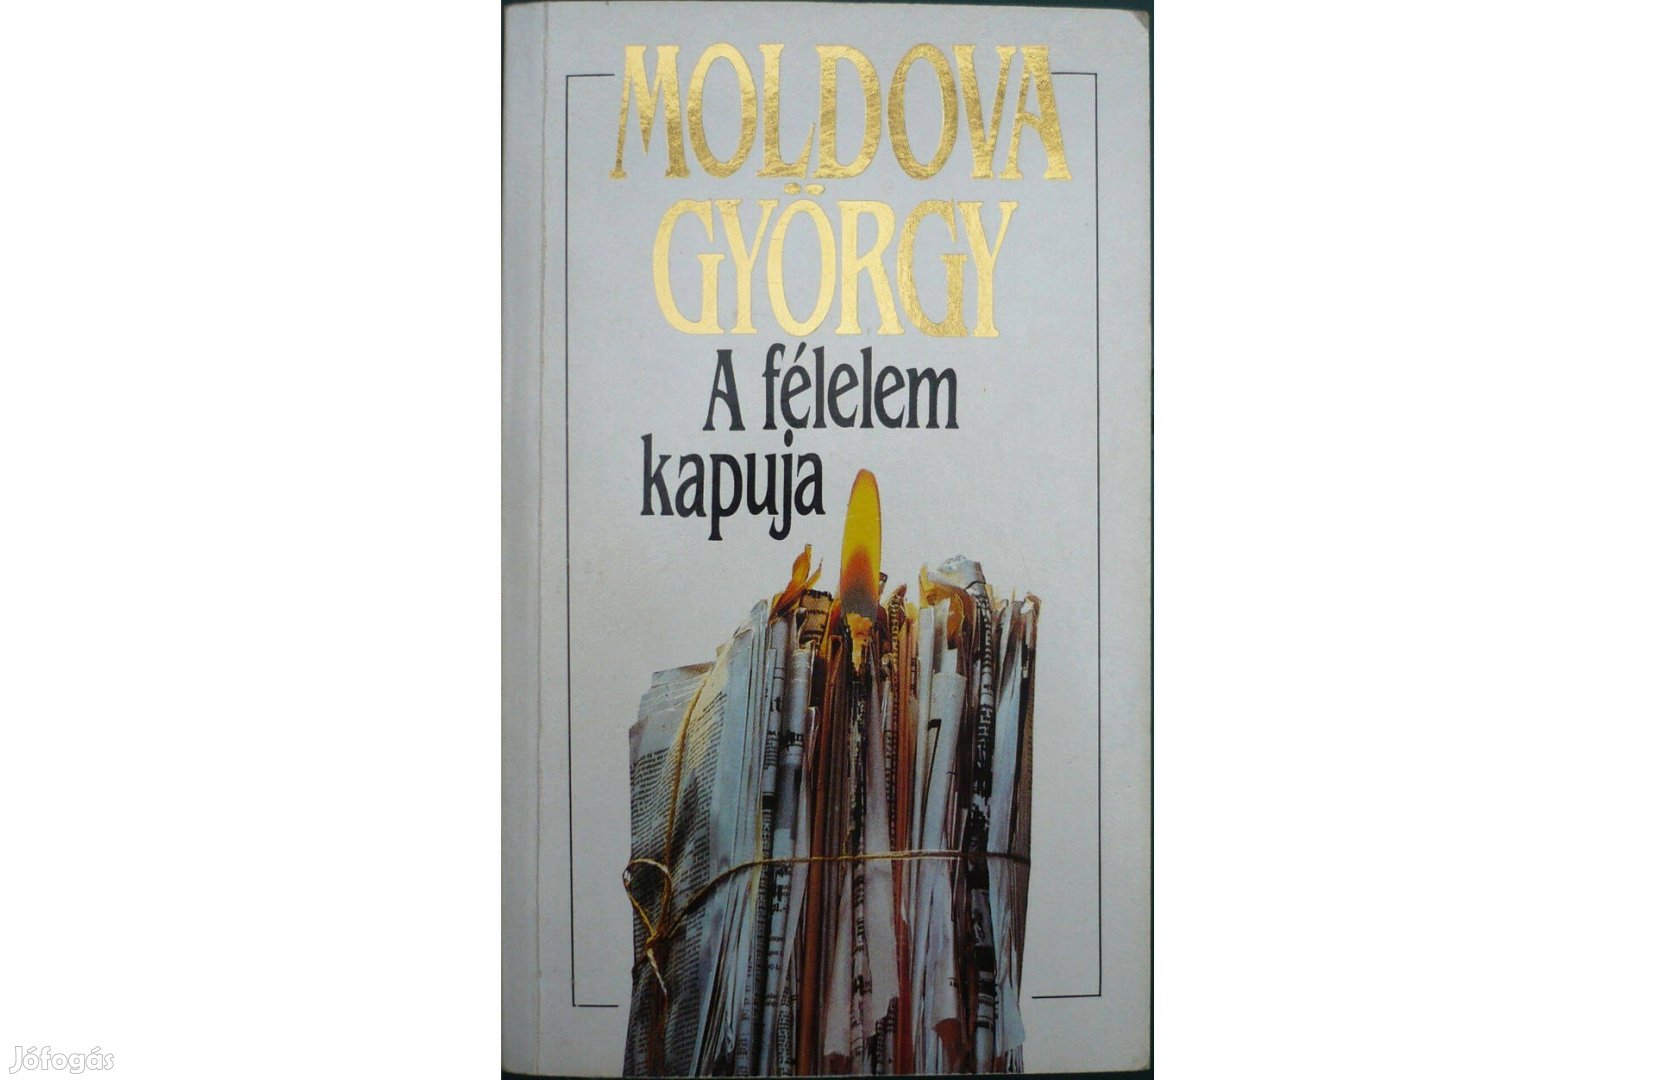 Moldova György - A félelem kapuja